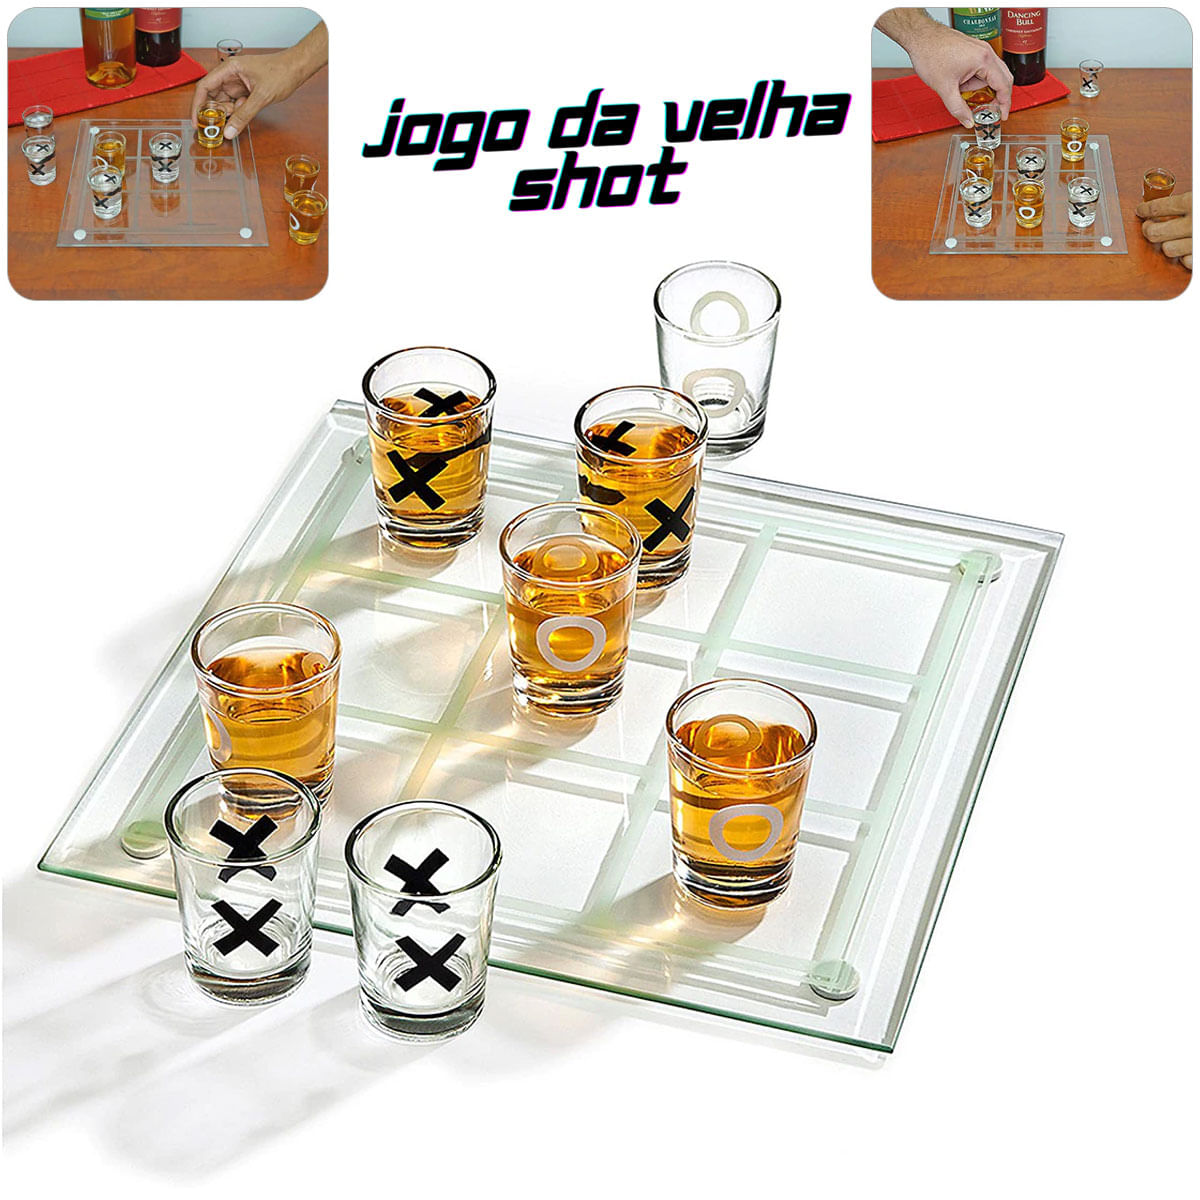 Jogo Beber Drink jogo de bebidas jogo roda de shot - HOUSE DECOR